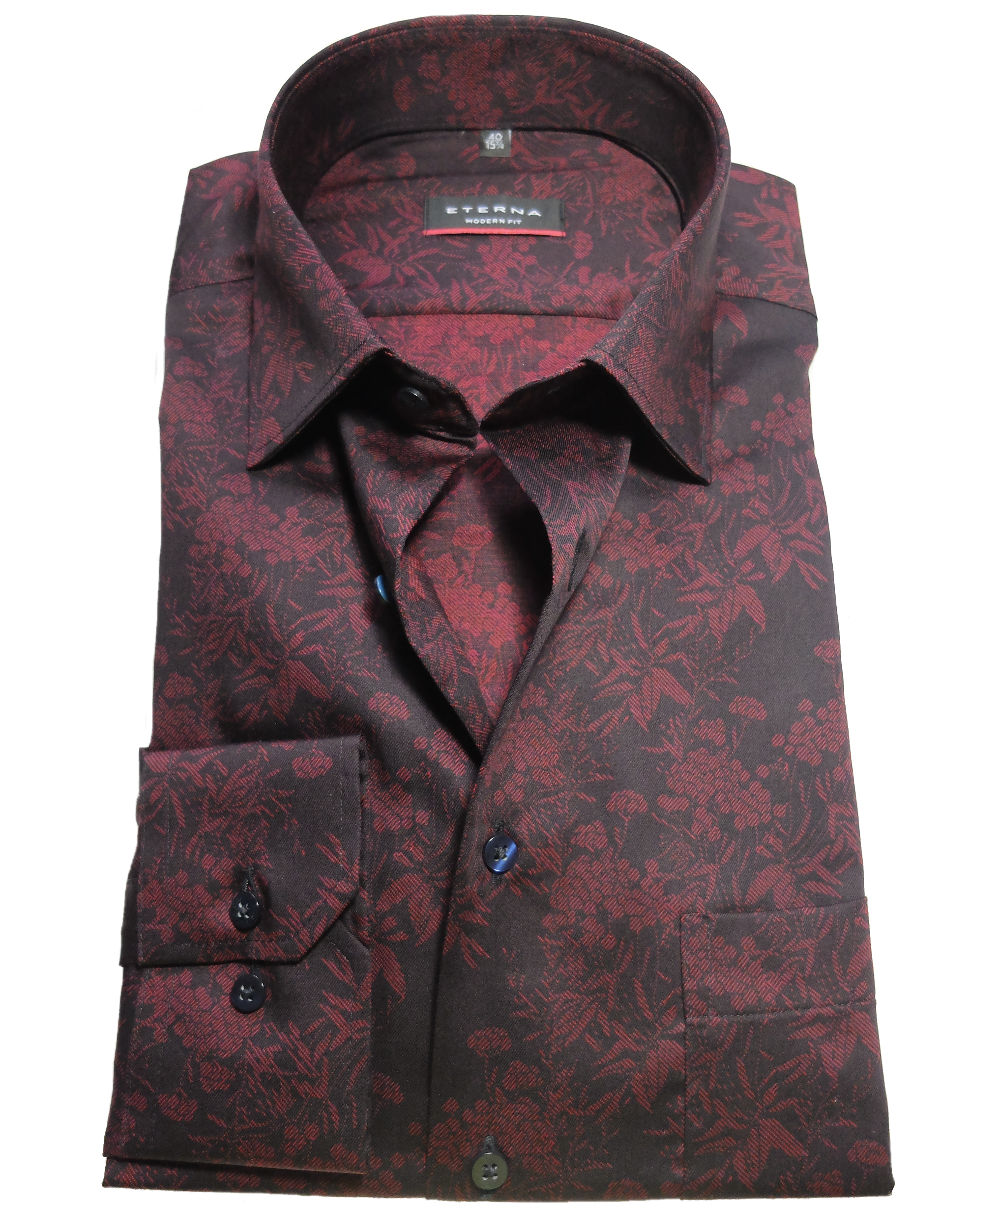 dunkelrot Langarmhemd schwarz Krawatte Hochwertige fairen zu - + Herrenmode führender Fit Marken Modern Floralmotiv eterna